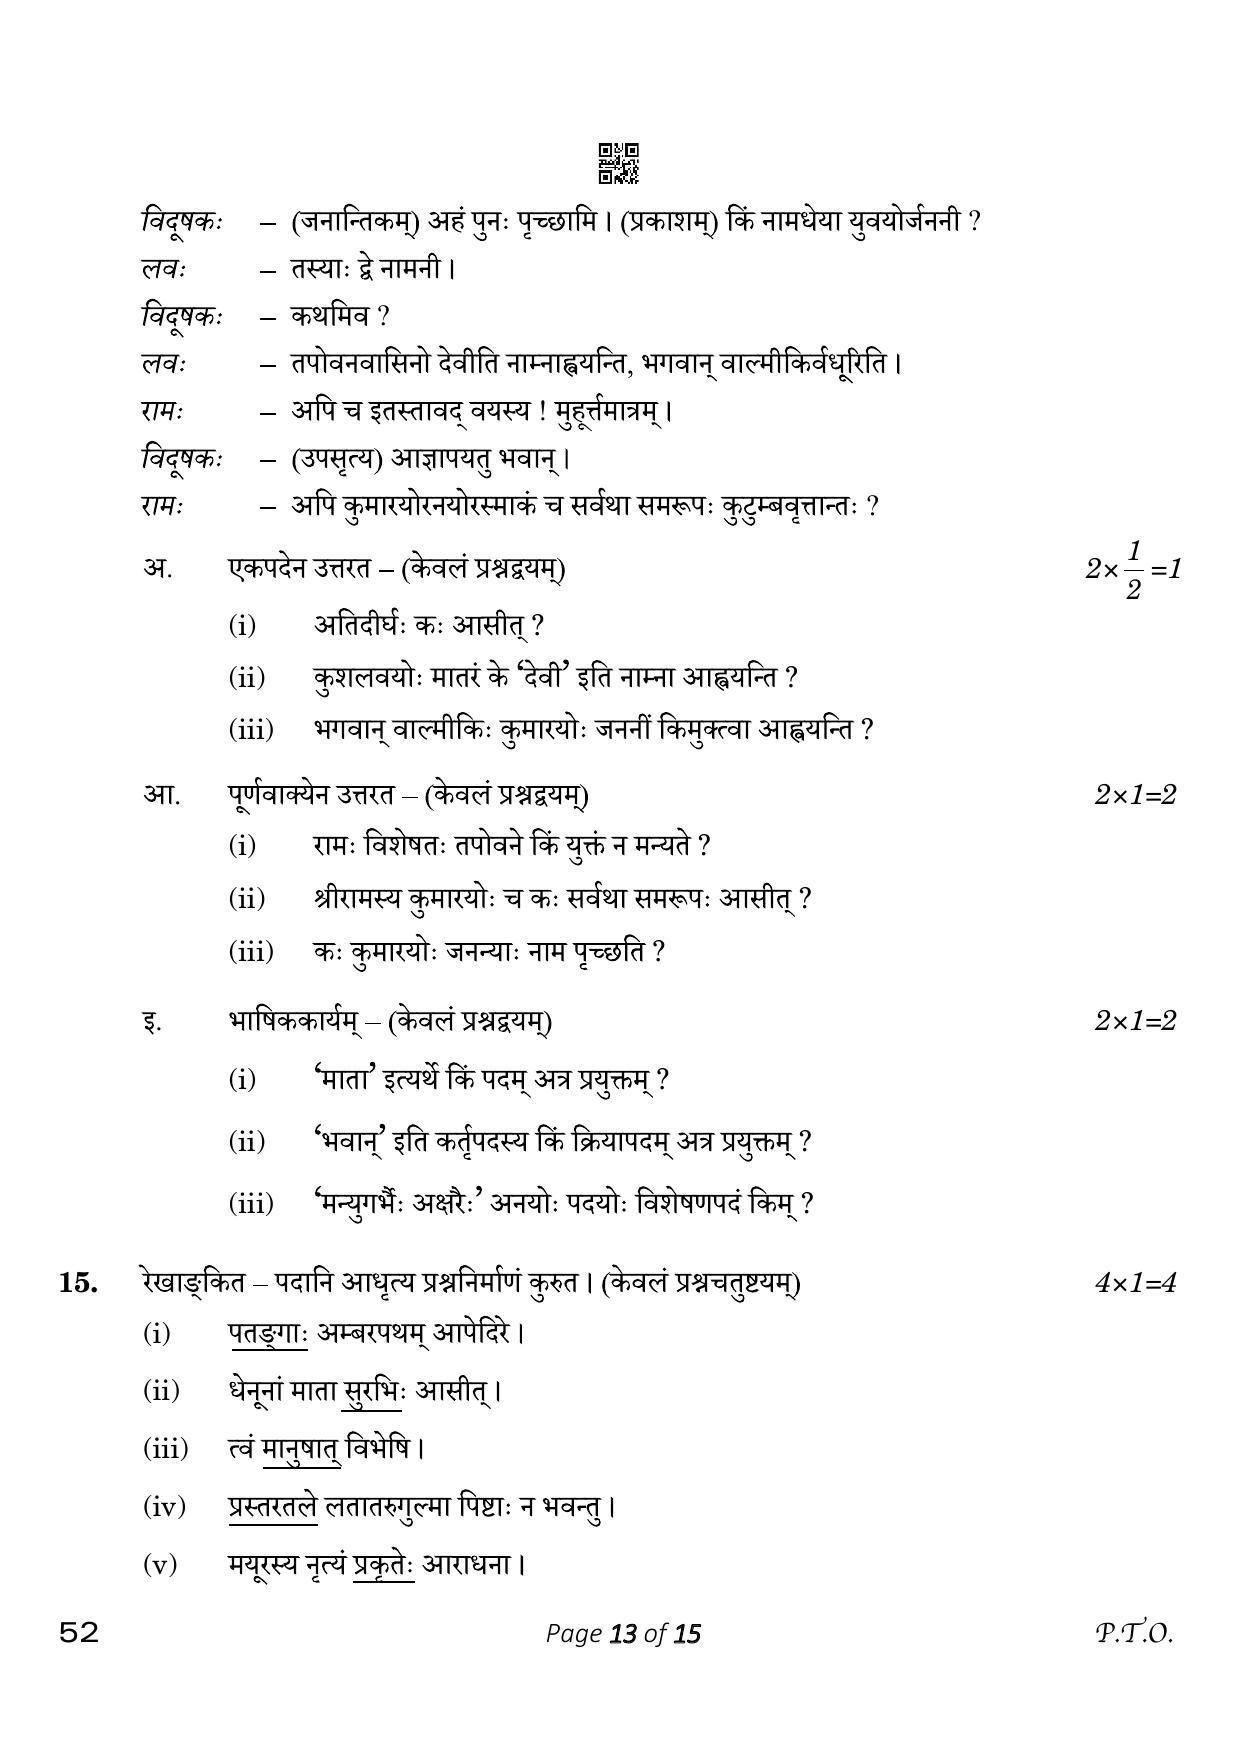 CBSE Class 10 Sanskrit (Compartment) 2023 Question Paper - Page 13